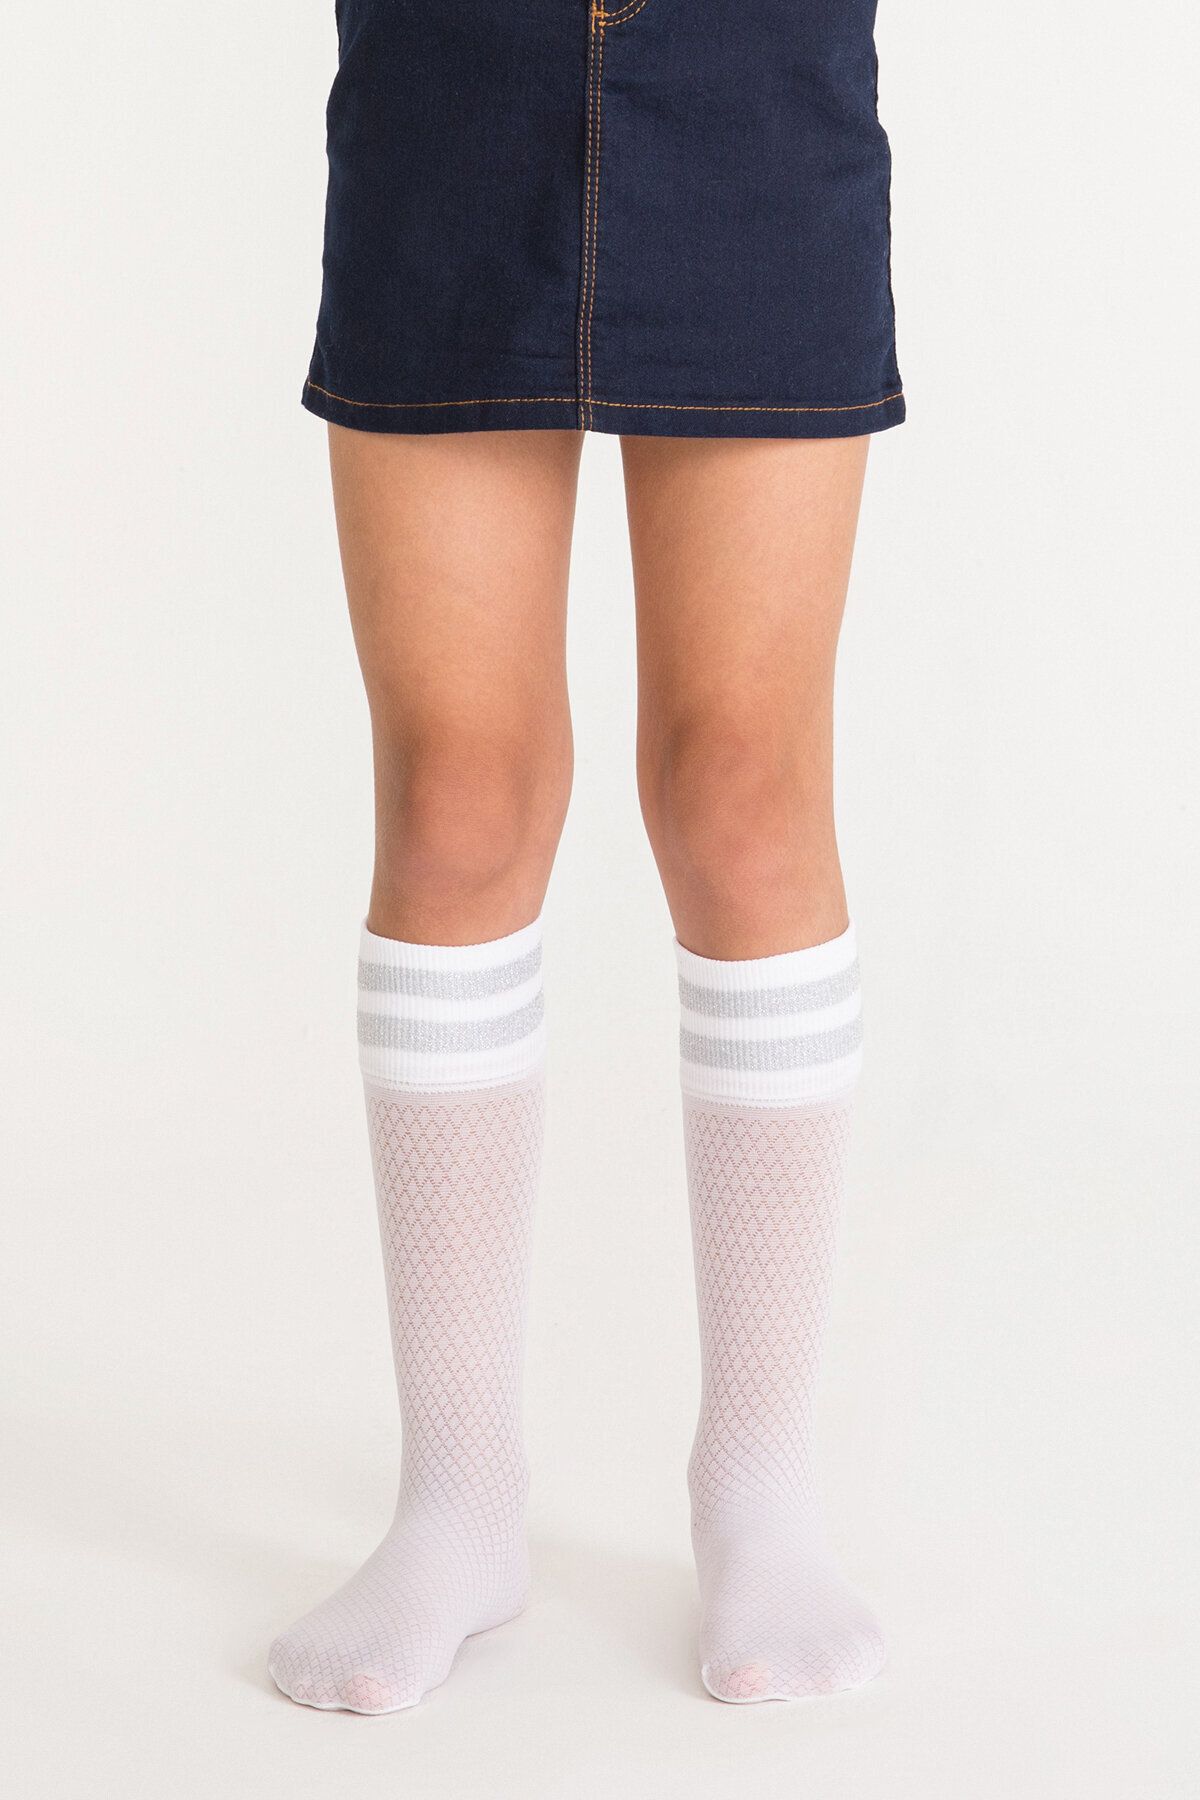 Penti Beyaz Kız Çocuk Çizgili Pantolon Çorabı